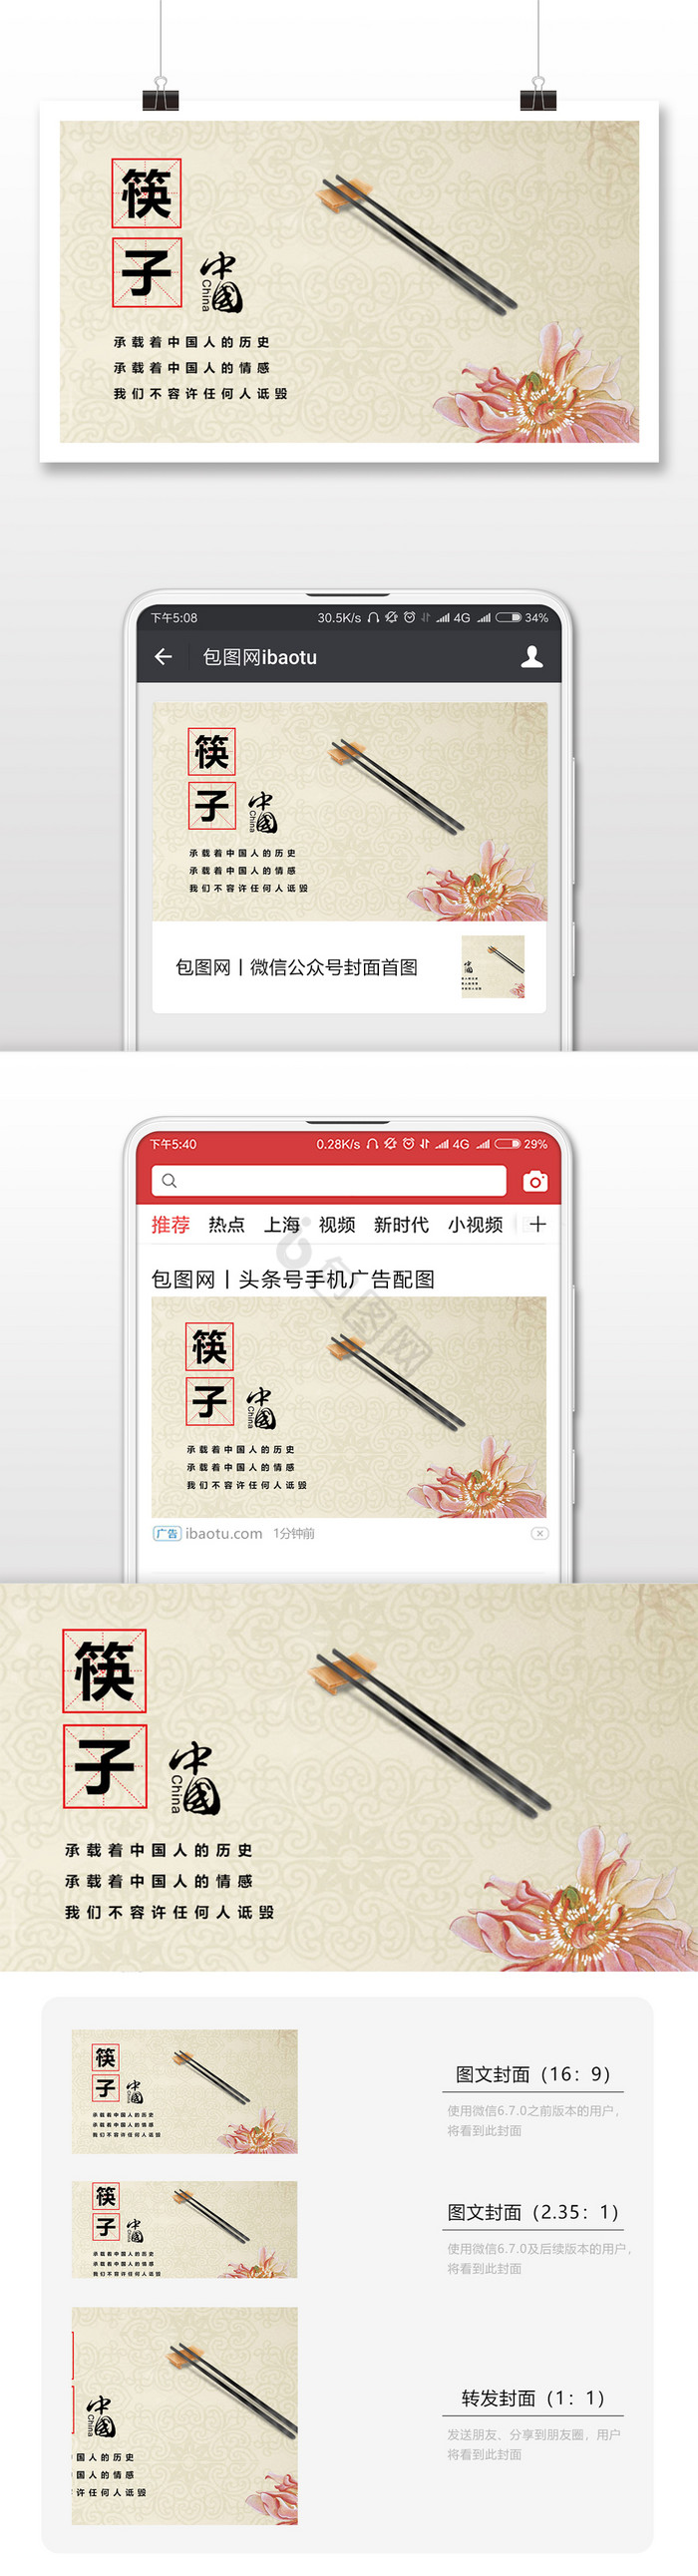 文艺复古筷子文化中国文化微信配图